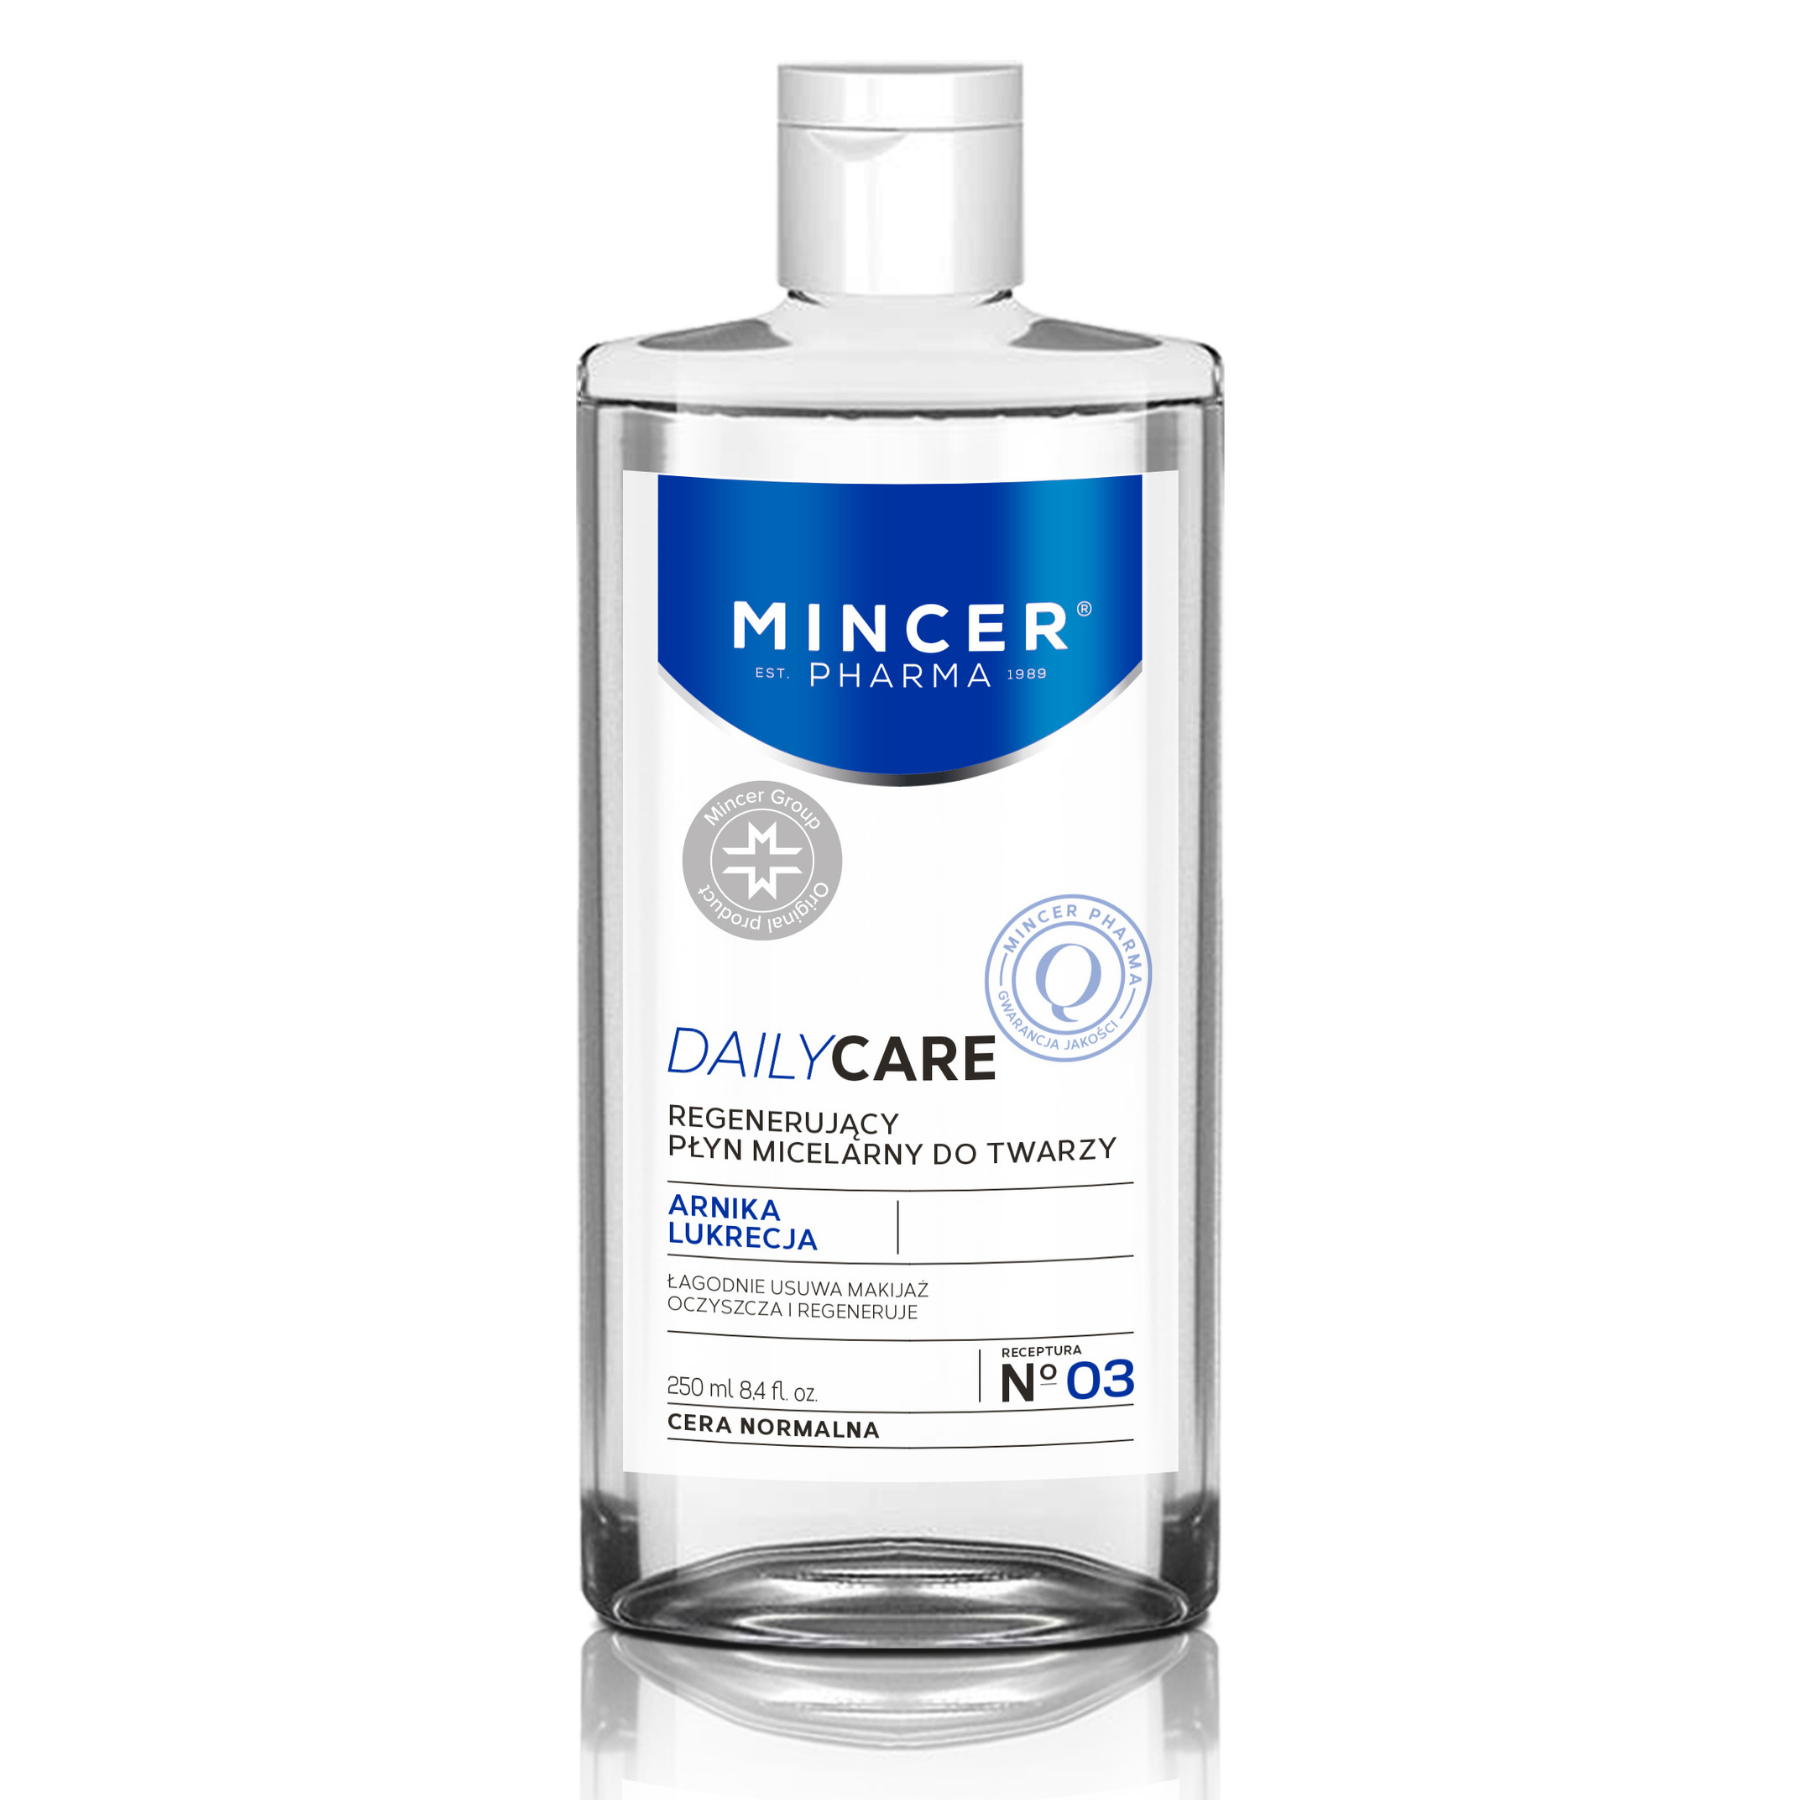 Мицеллярная вода 250 мл. Mincer Pharma тоник n 04. TM Mincer косметика. Mincer Pharma мицеллярная вода n 04. Mincer Pharma зелёный.